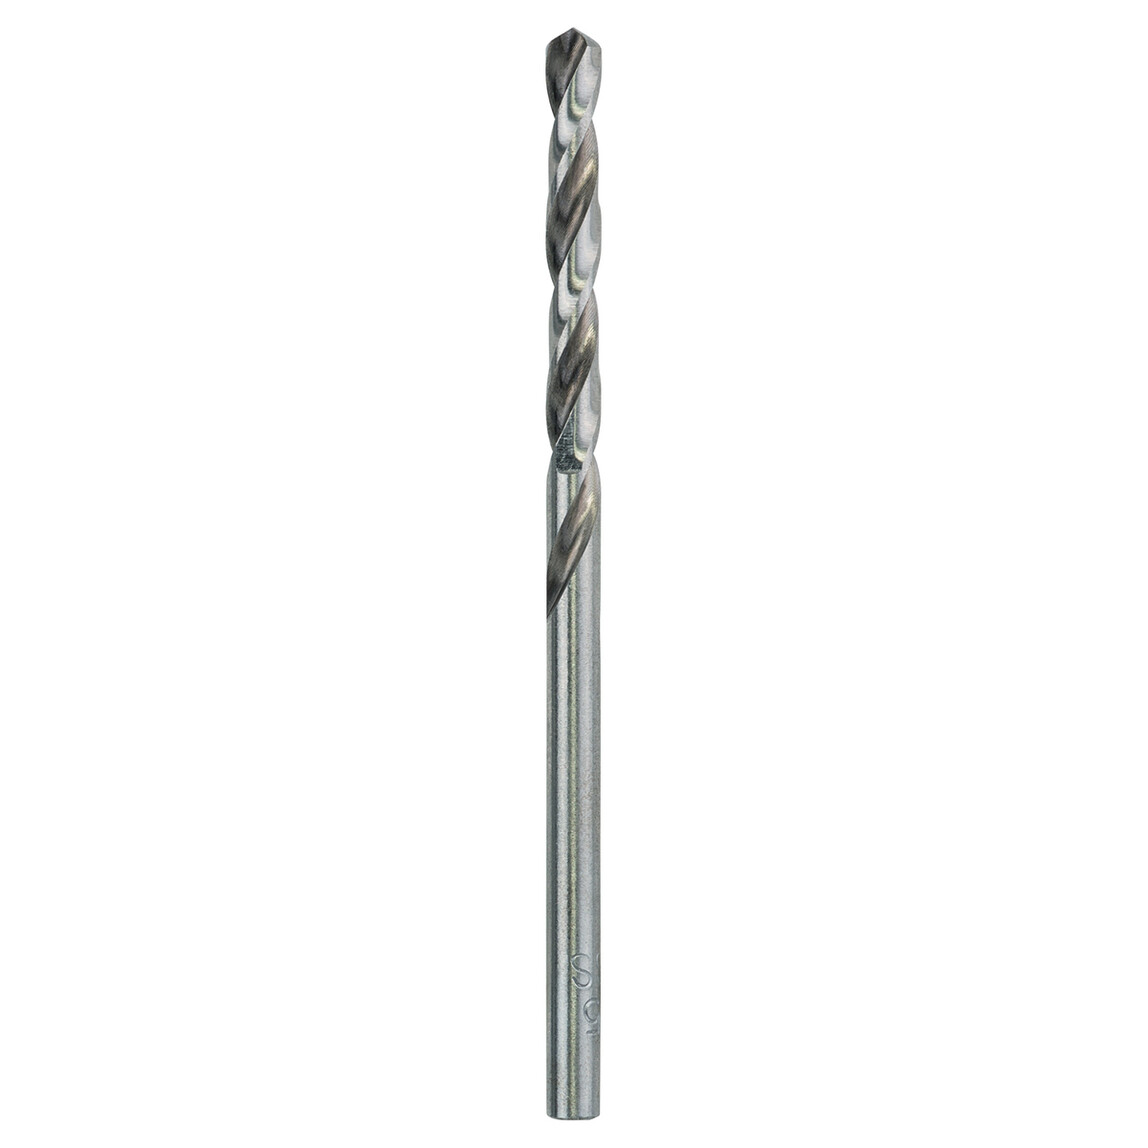    Craftomat HSS-G Metal Matkap Ucu 3.5 mm  